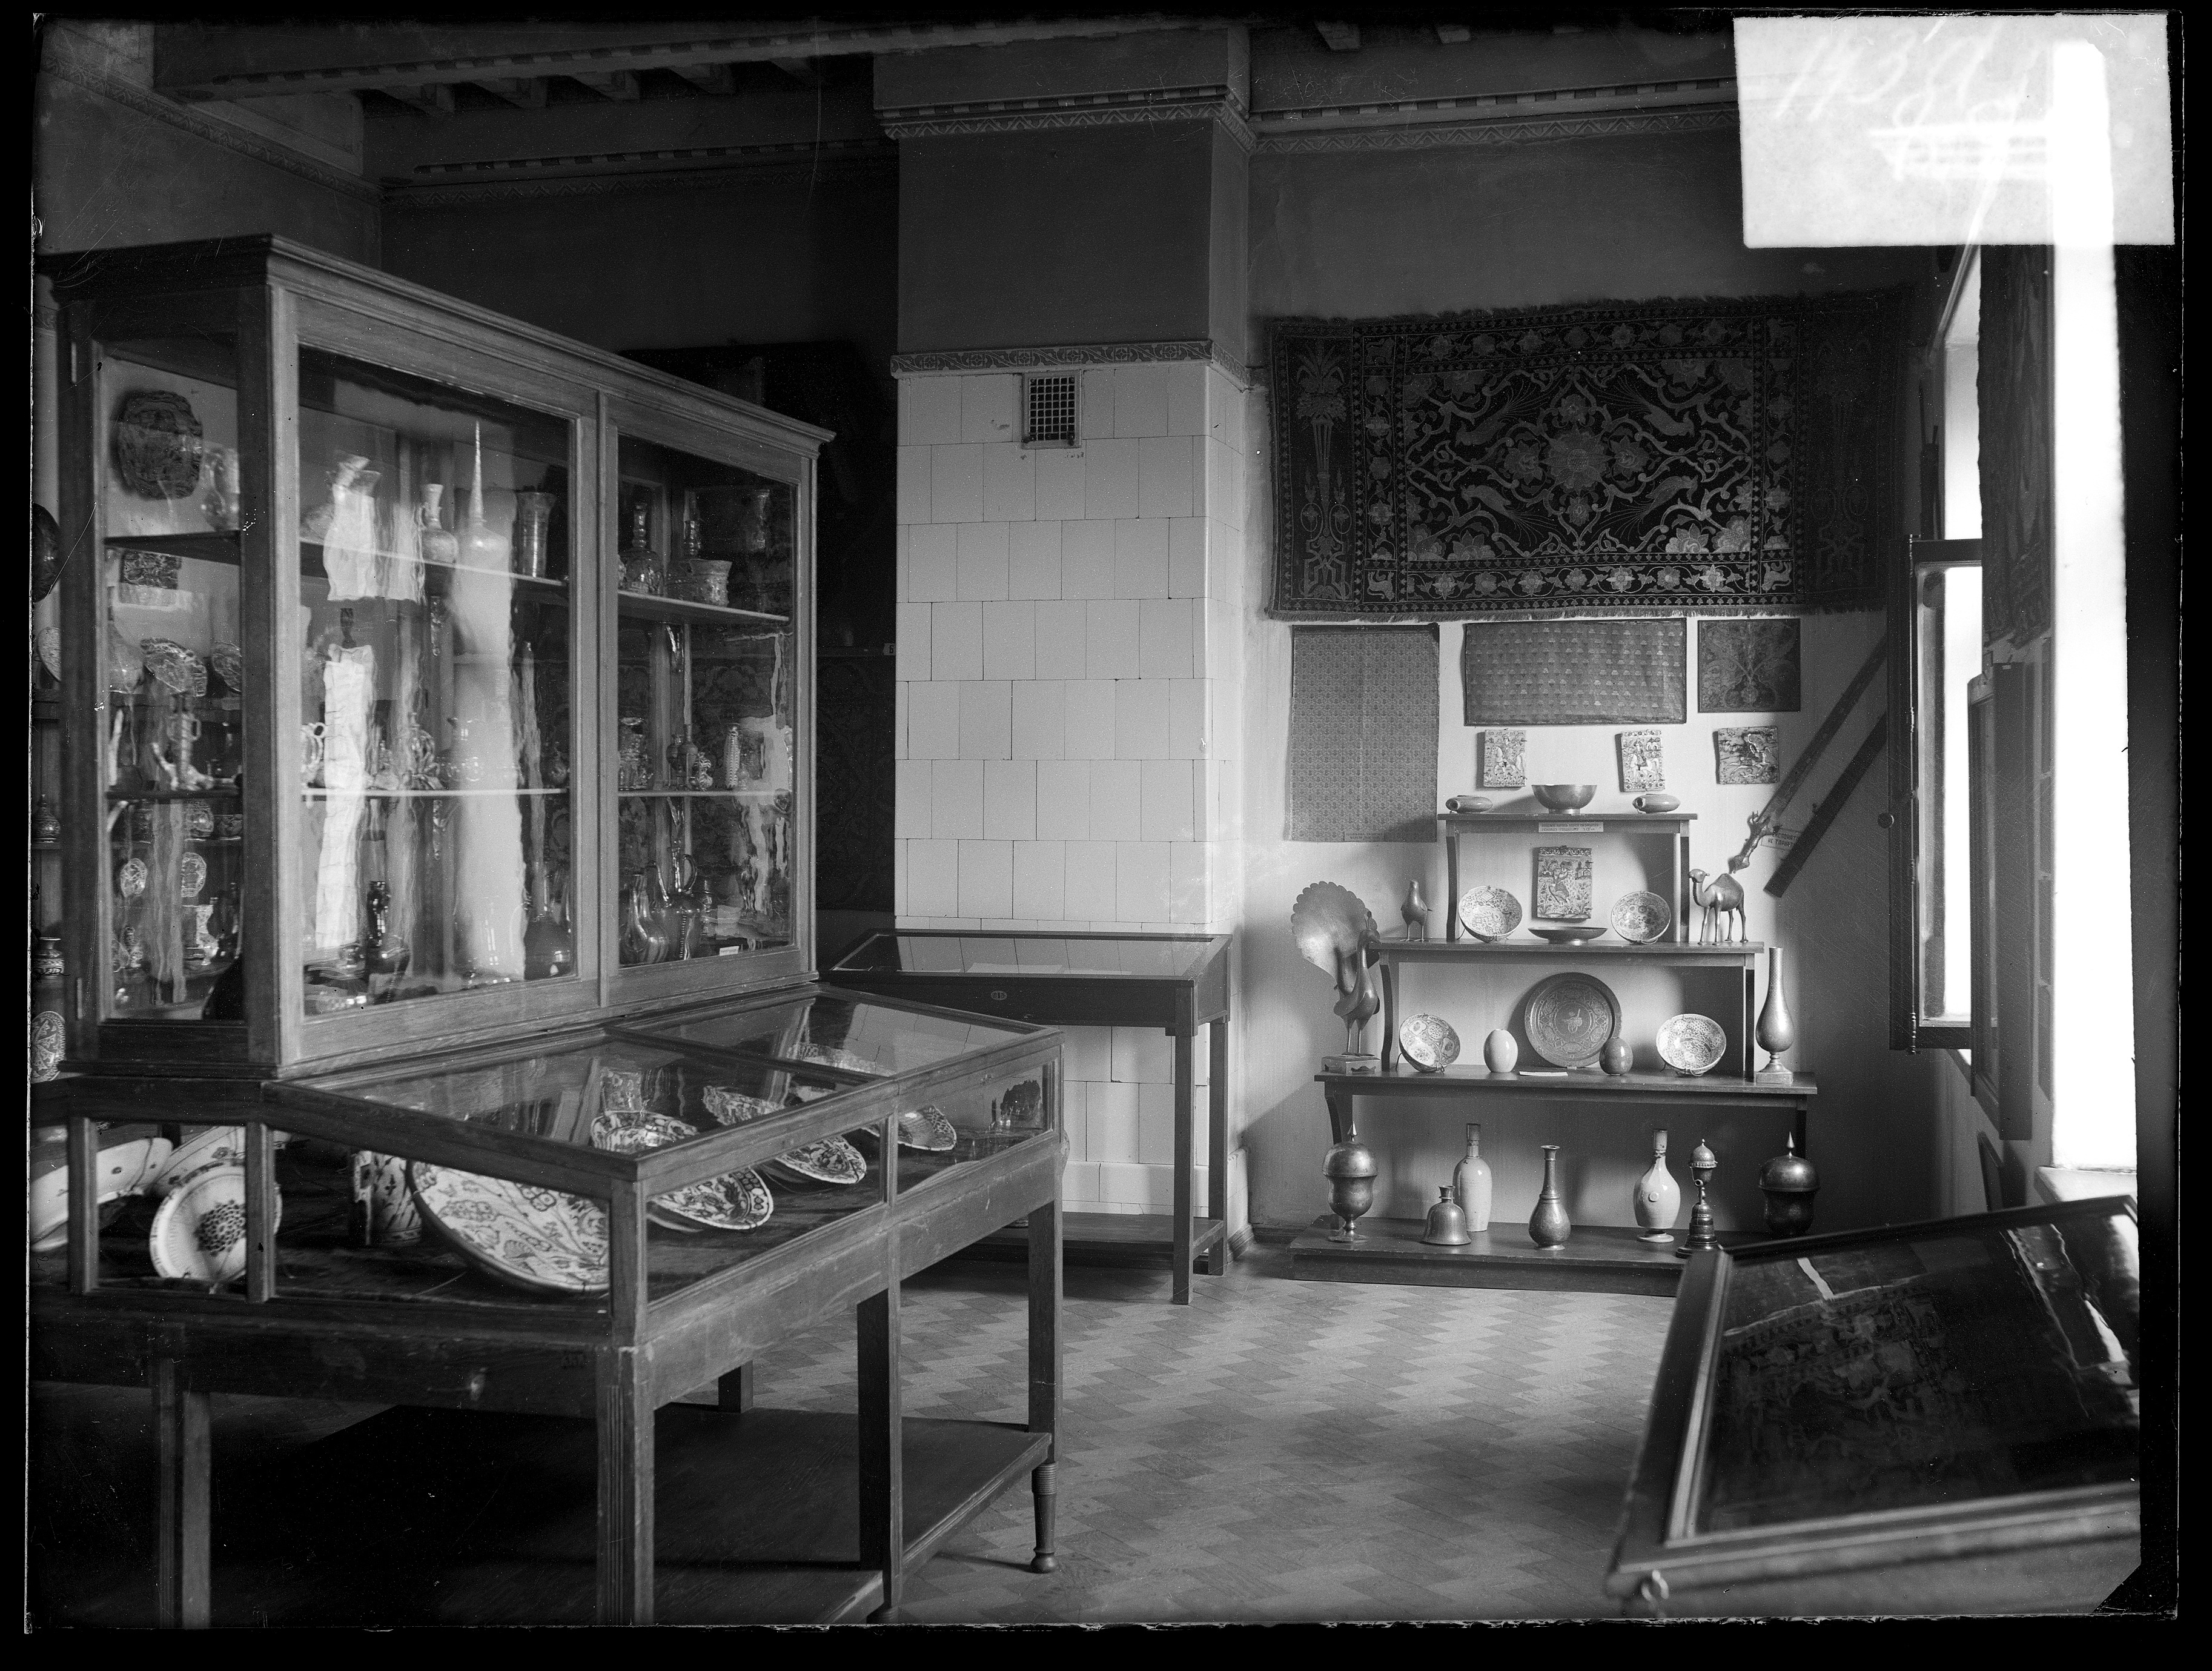 Перша експозиція мистецтва ісламу (кураторка М. Вязьмітіна) на 3 поверсі дому Ханенків, 1930 рік. ©Музей Ханенків